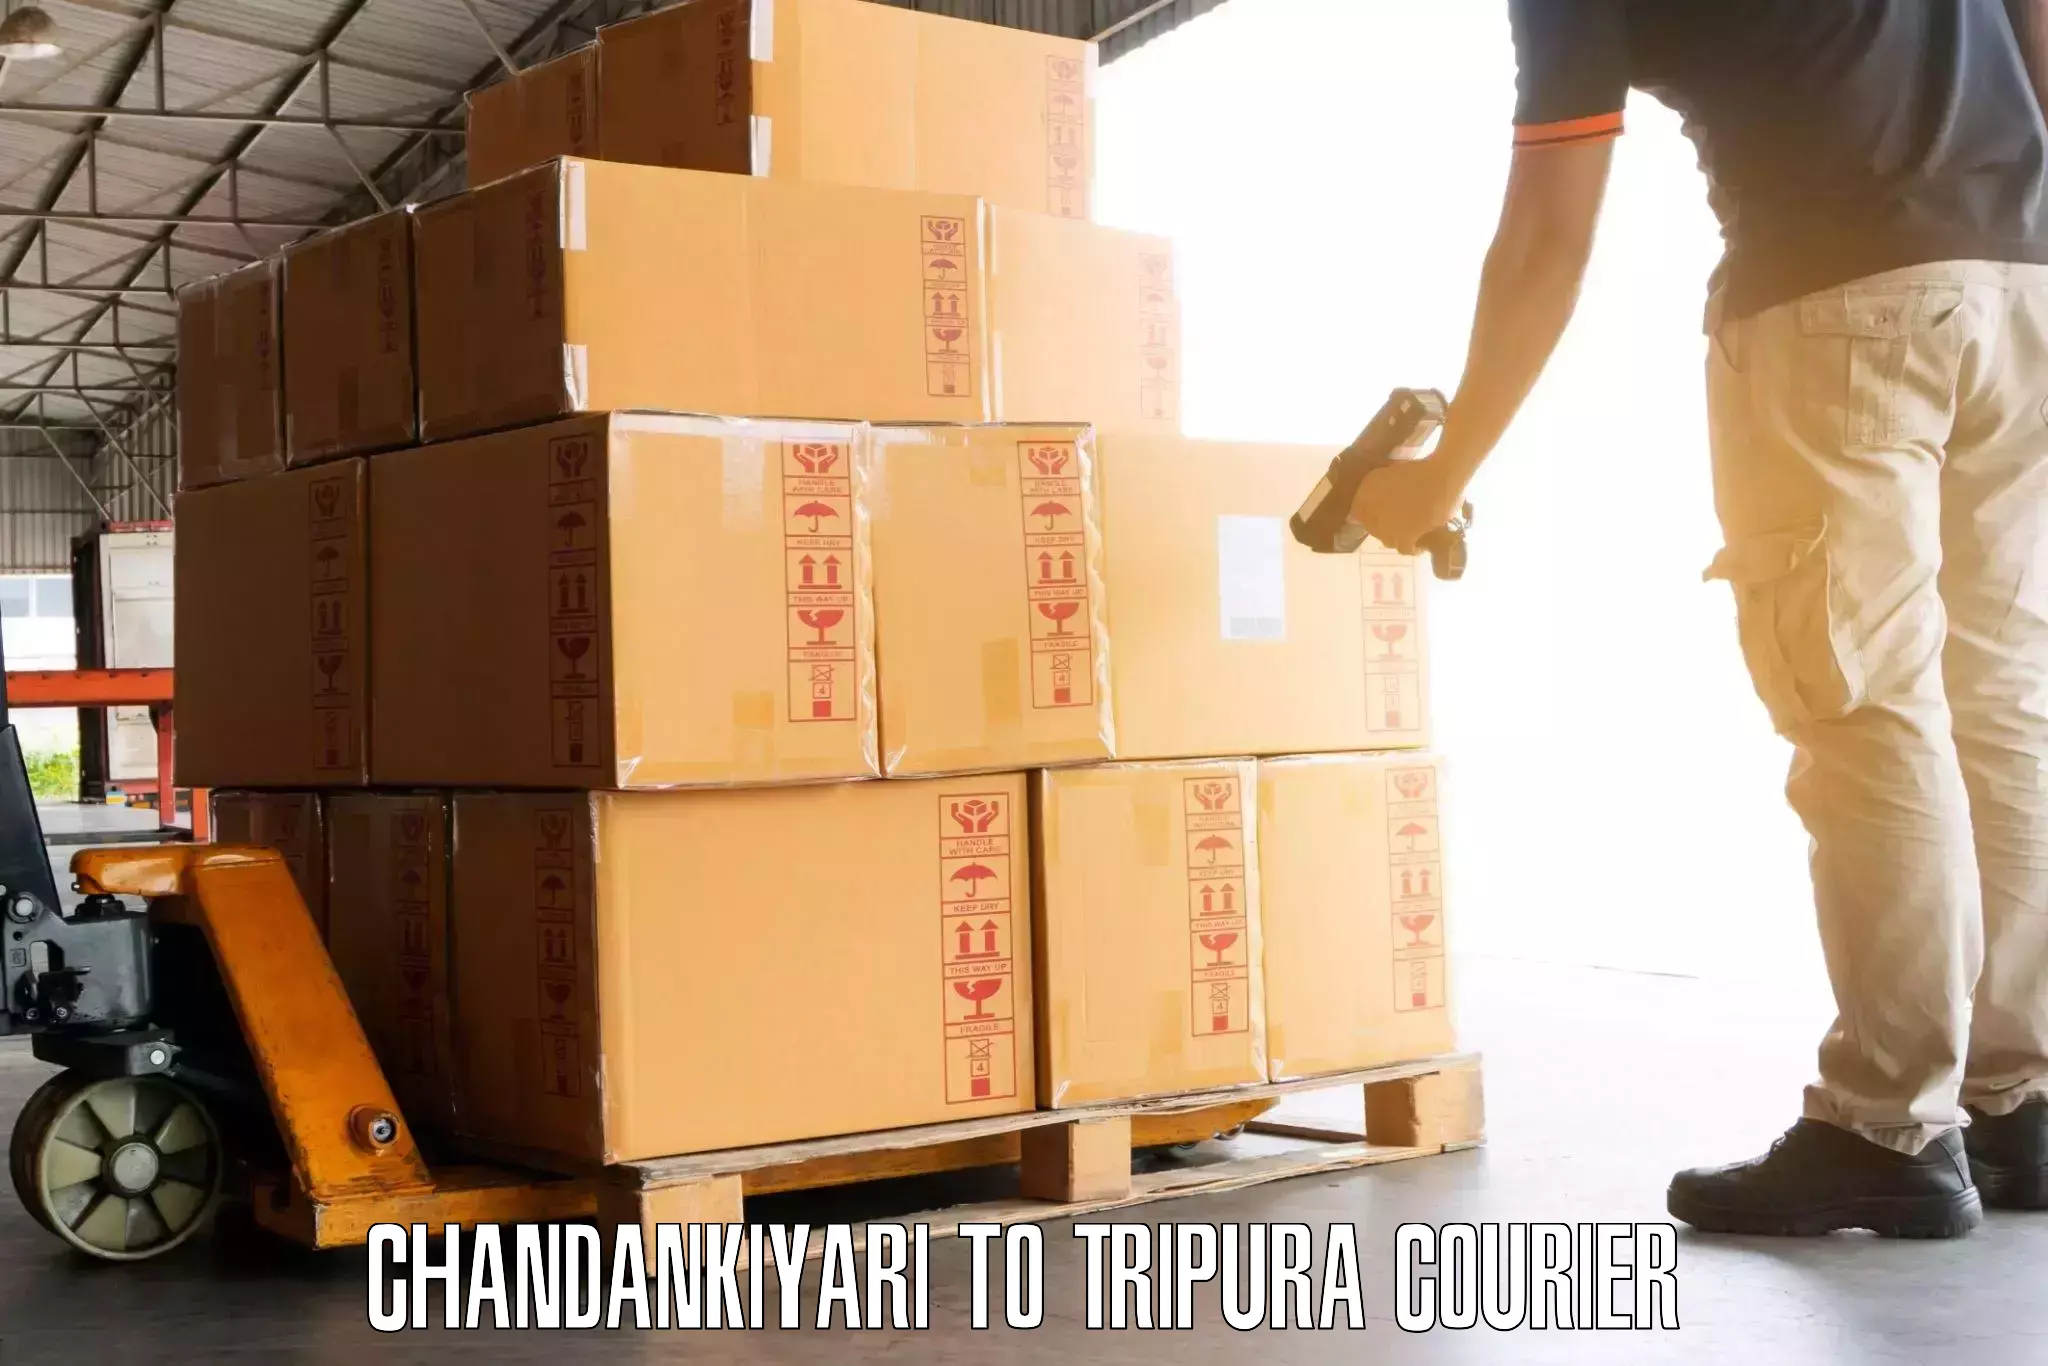 Citywide baggage courier Chandankiyari to Manughat